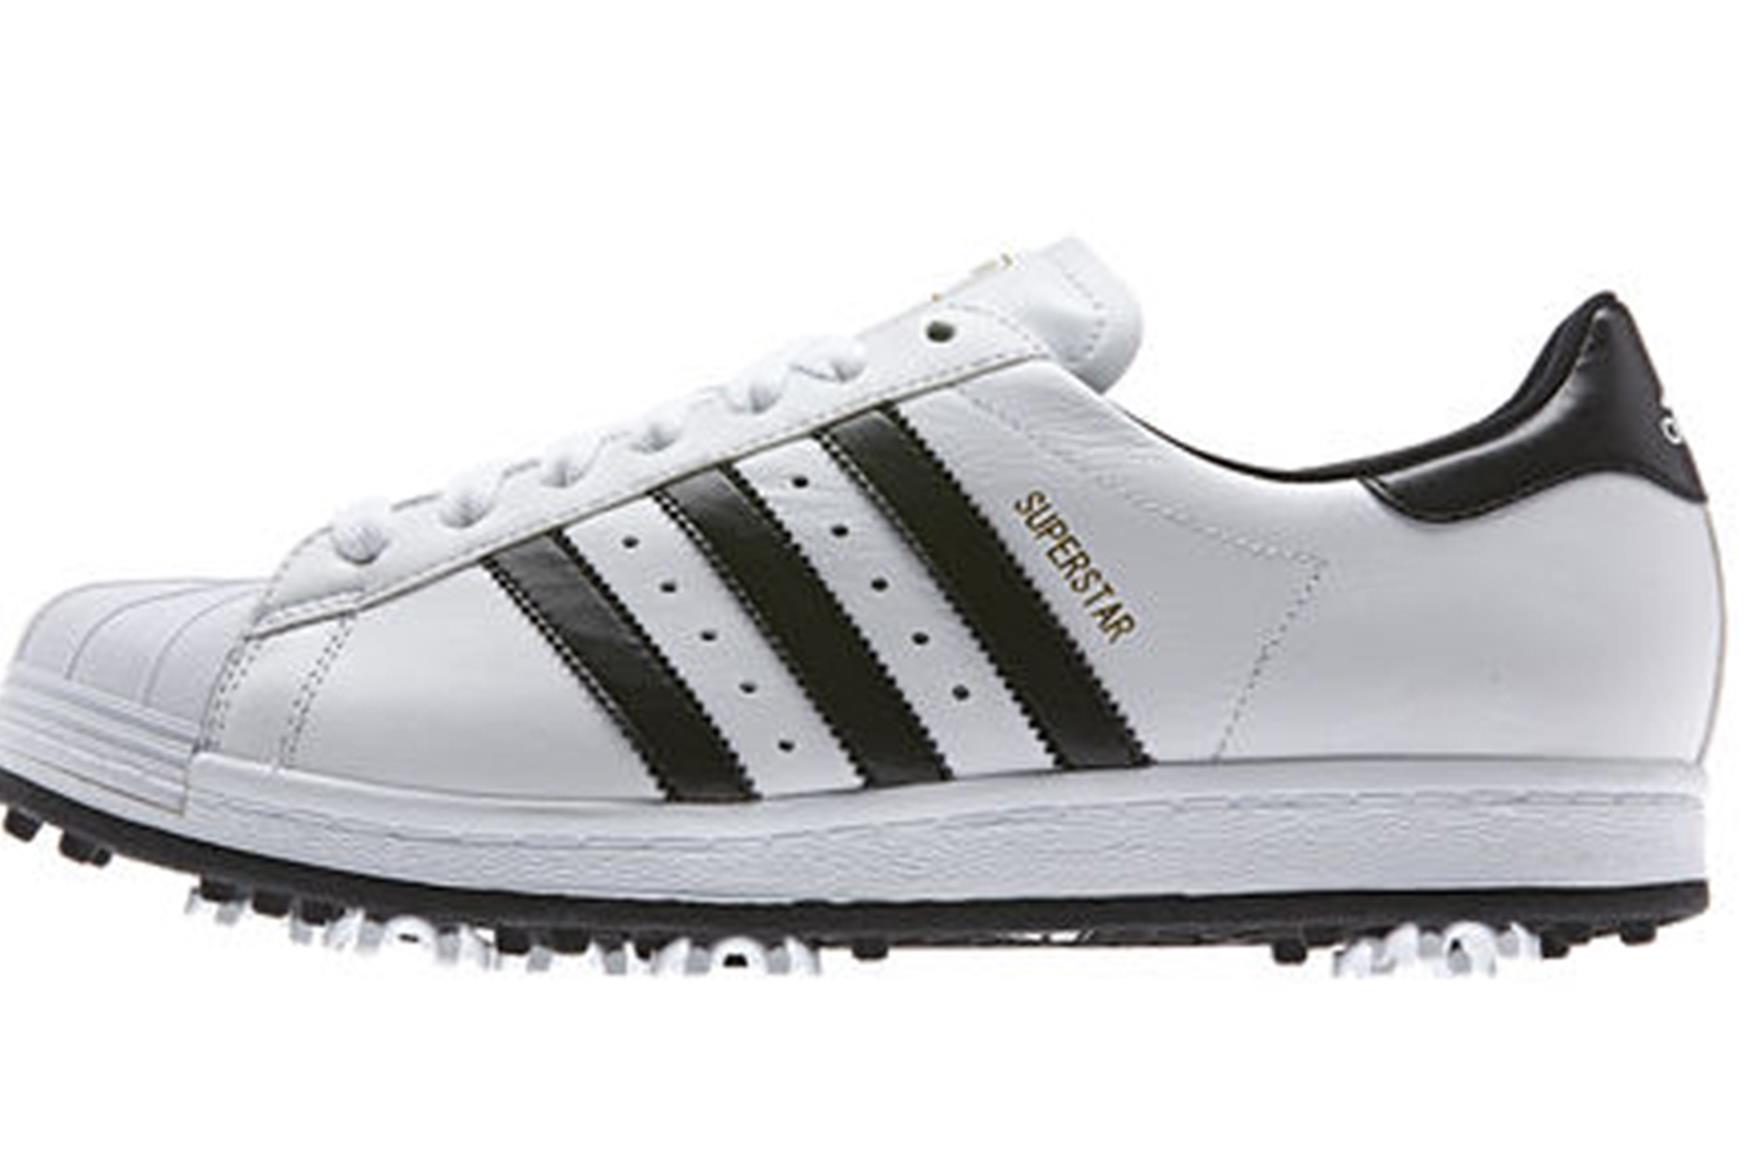 adidas spikeless golf shoes 2014